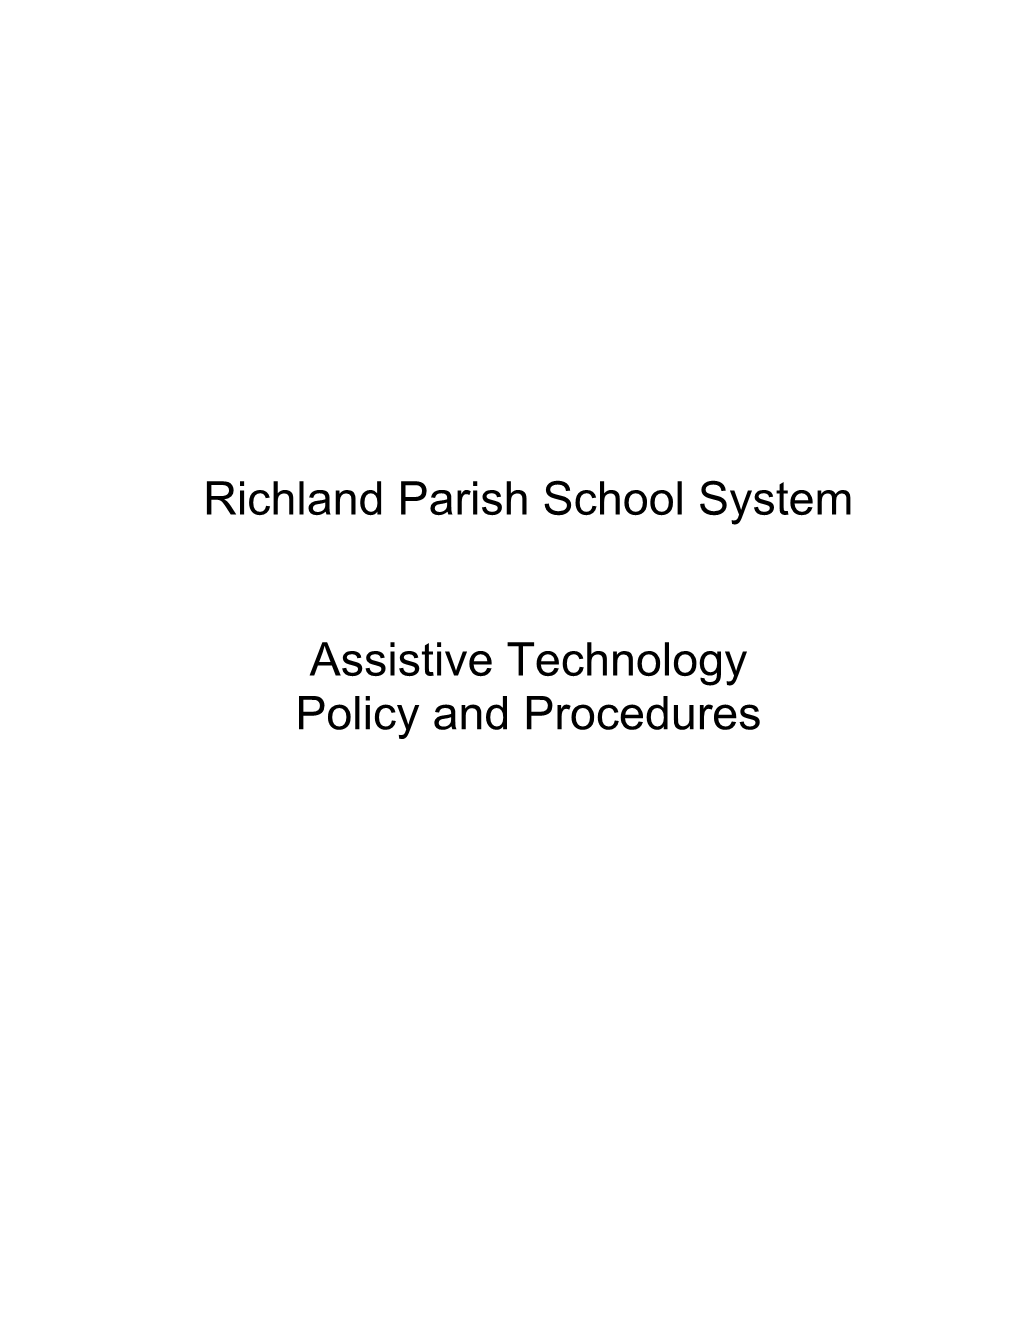 Richlandparishschool System